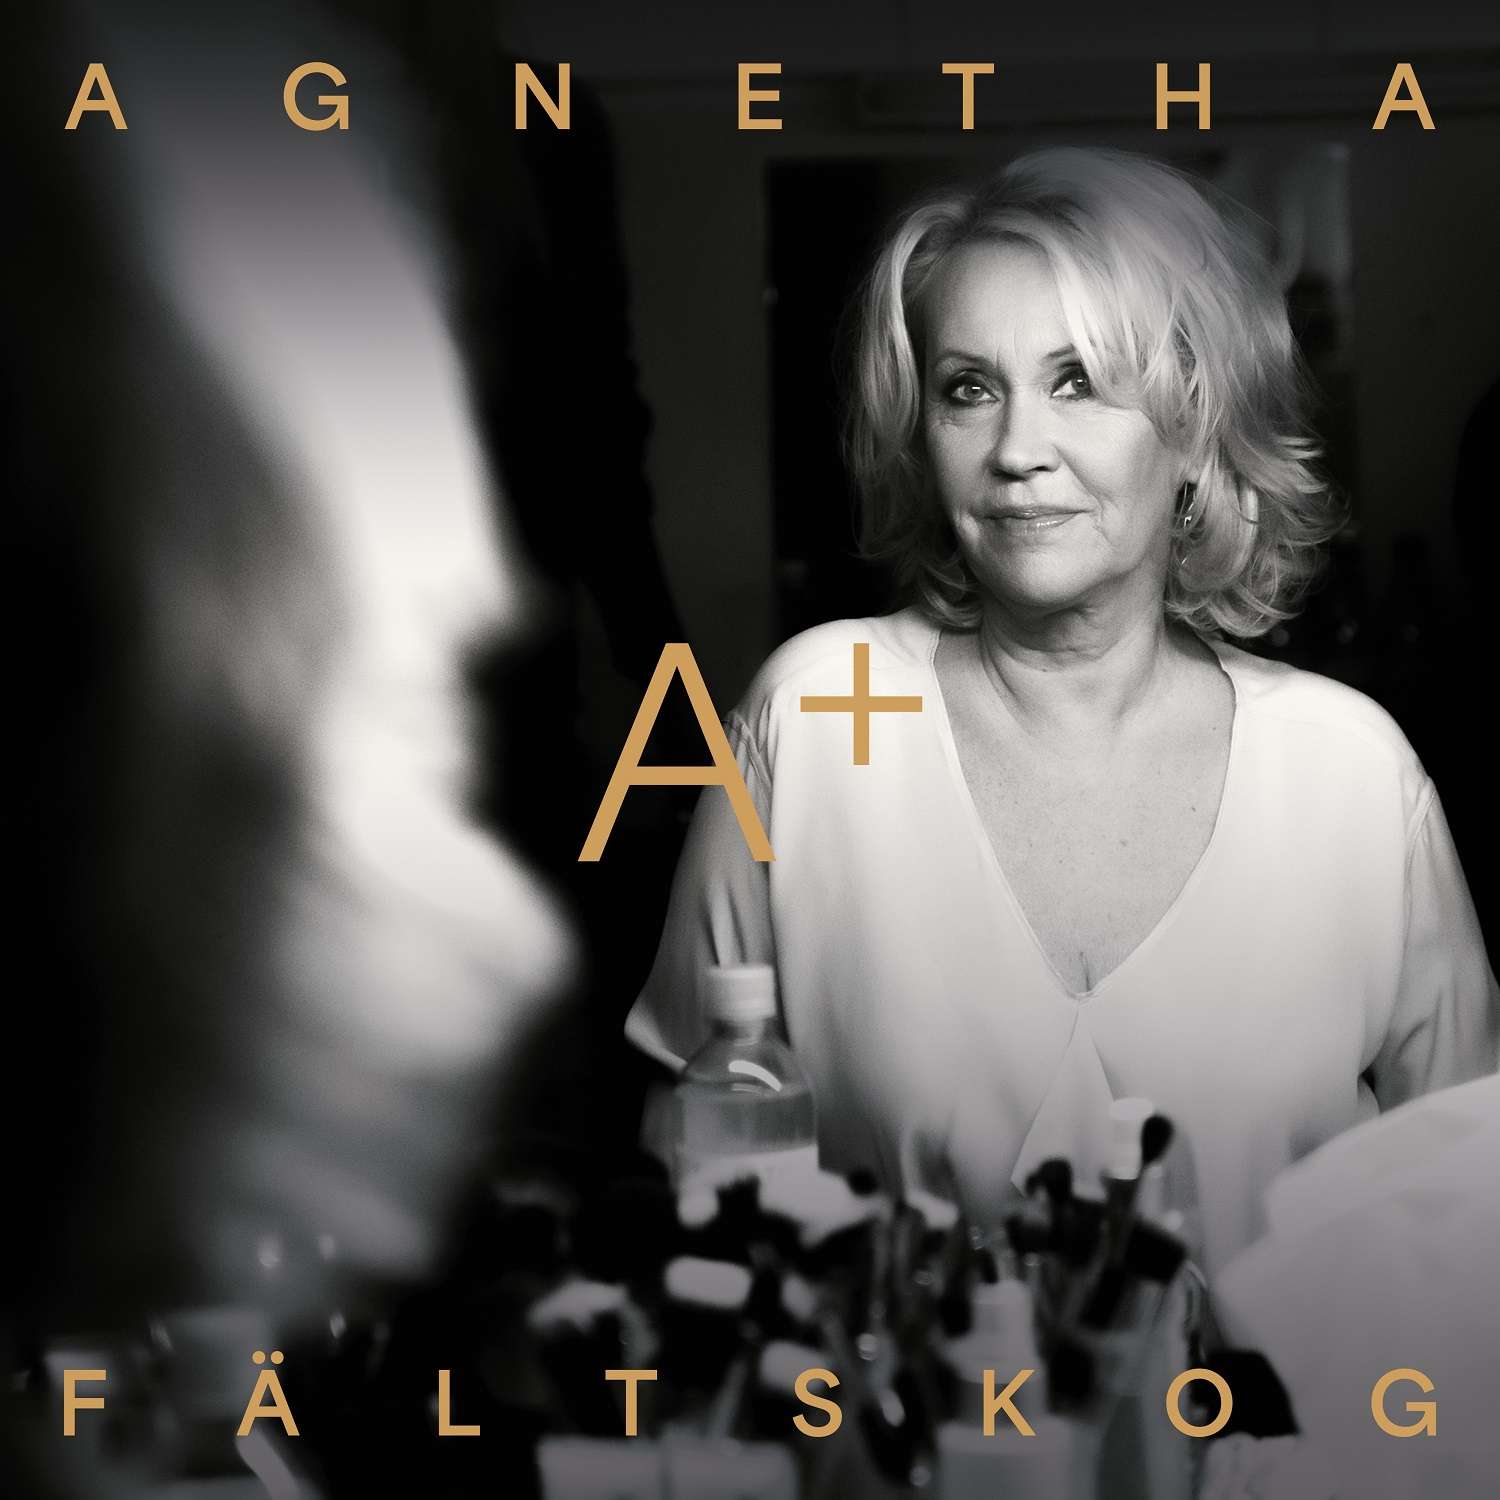 Okładka płyty winylowej artysty Agnetha Fältskog pod tytułem A+